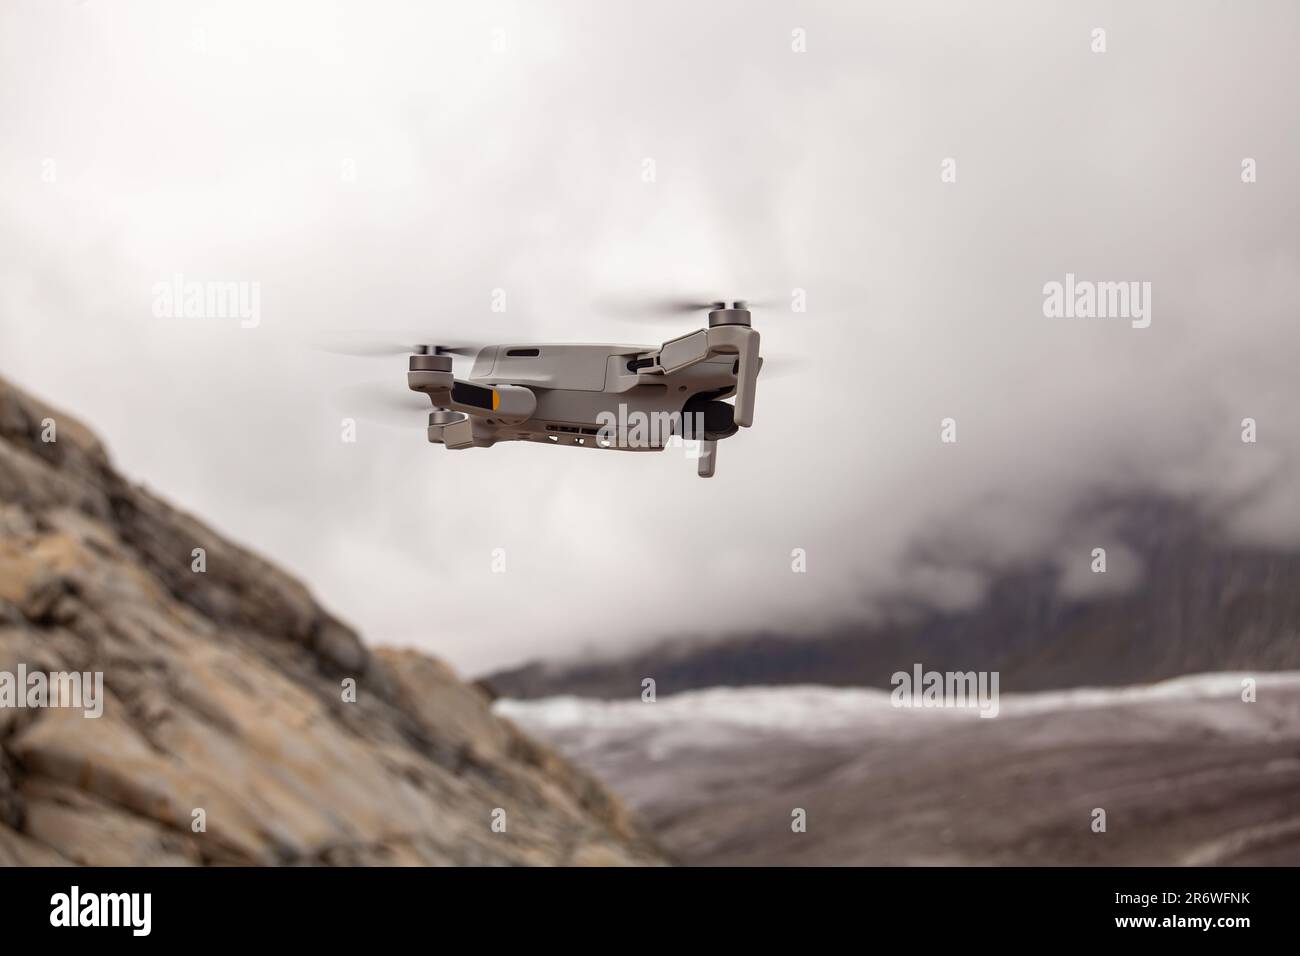 Eine Drohne schwingt anmutig in den wolkigen Himmel und fängt atemberaubende Blicke auf majestätische Berge im Hintergrund ein Stockfoto